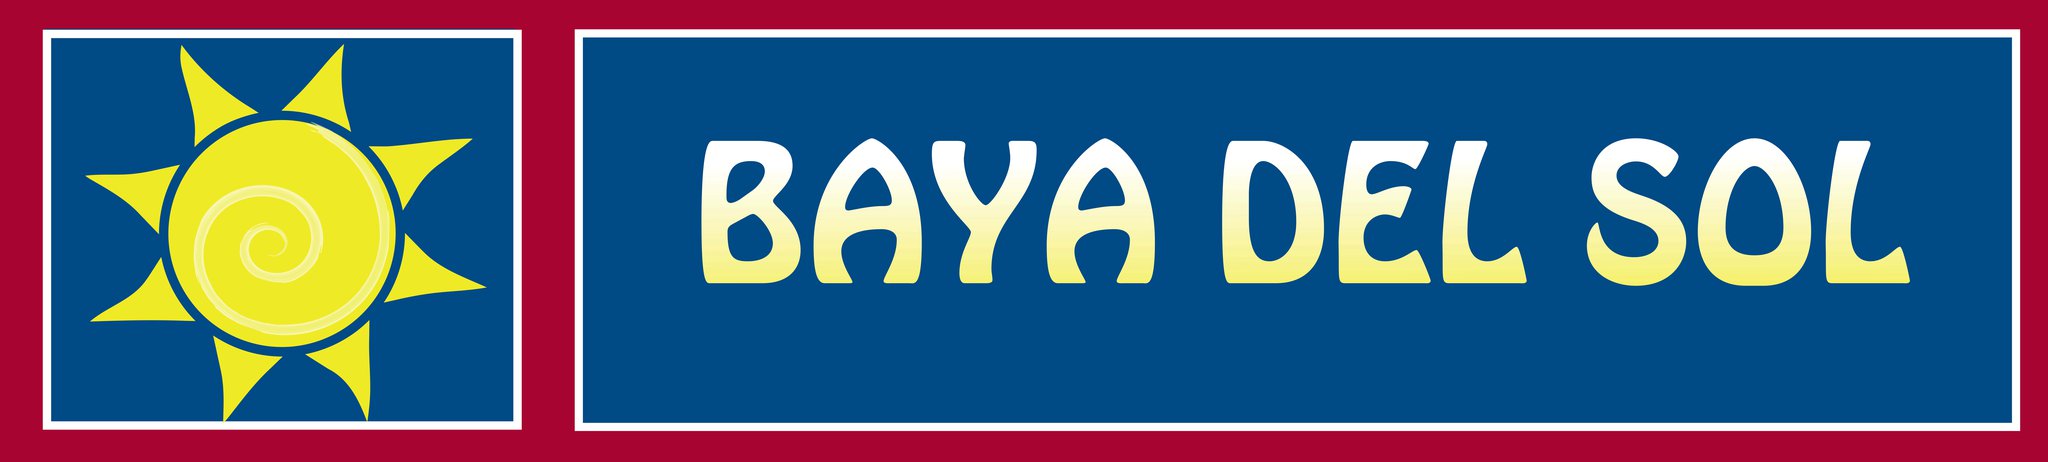 Baya Del Sol